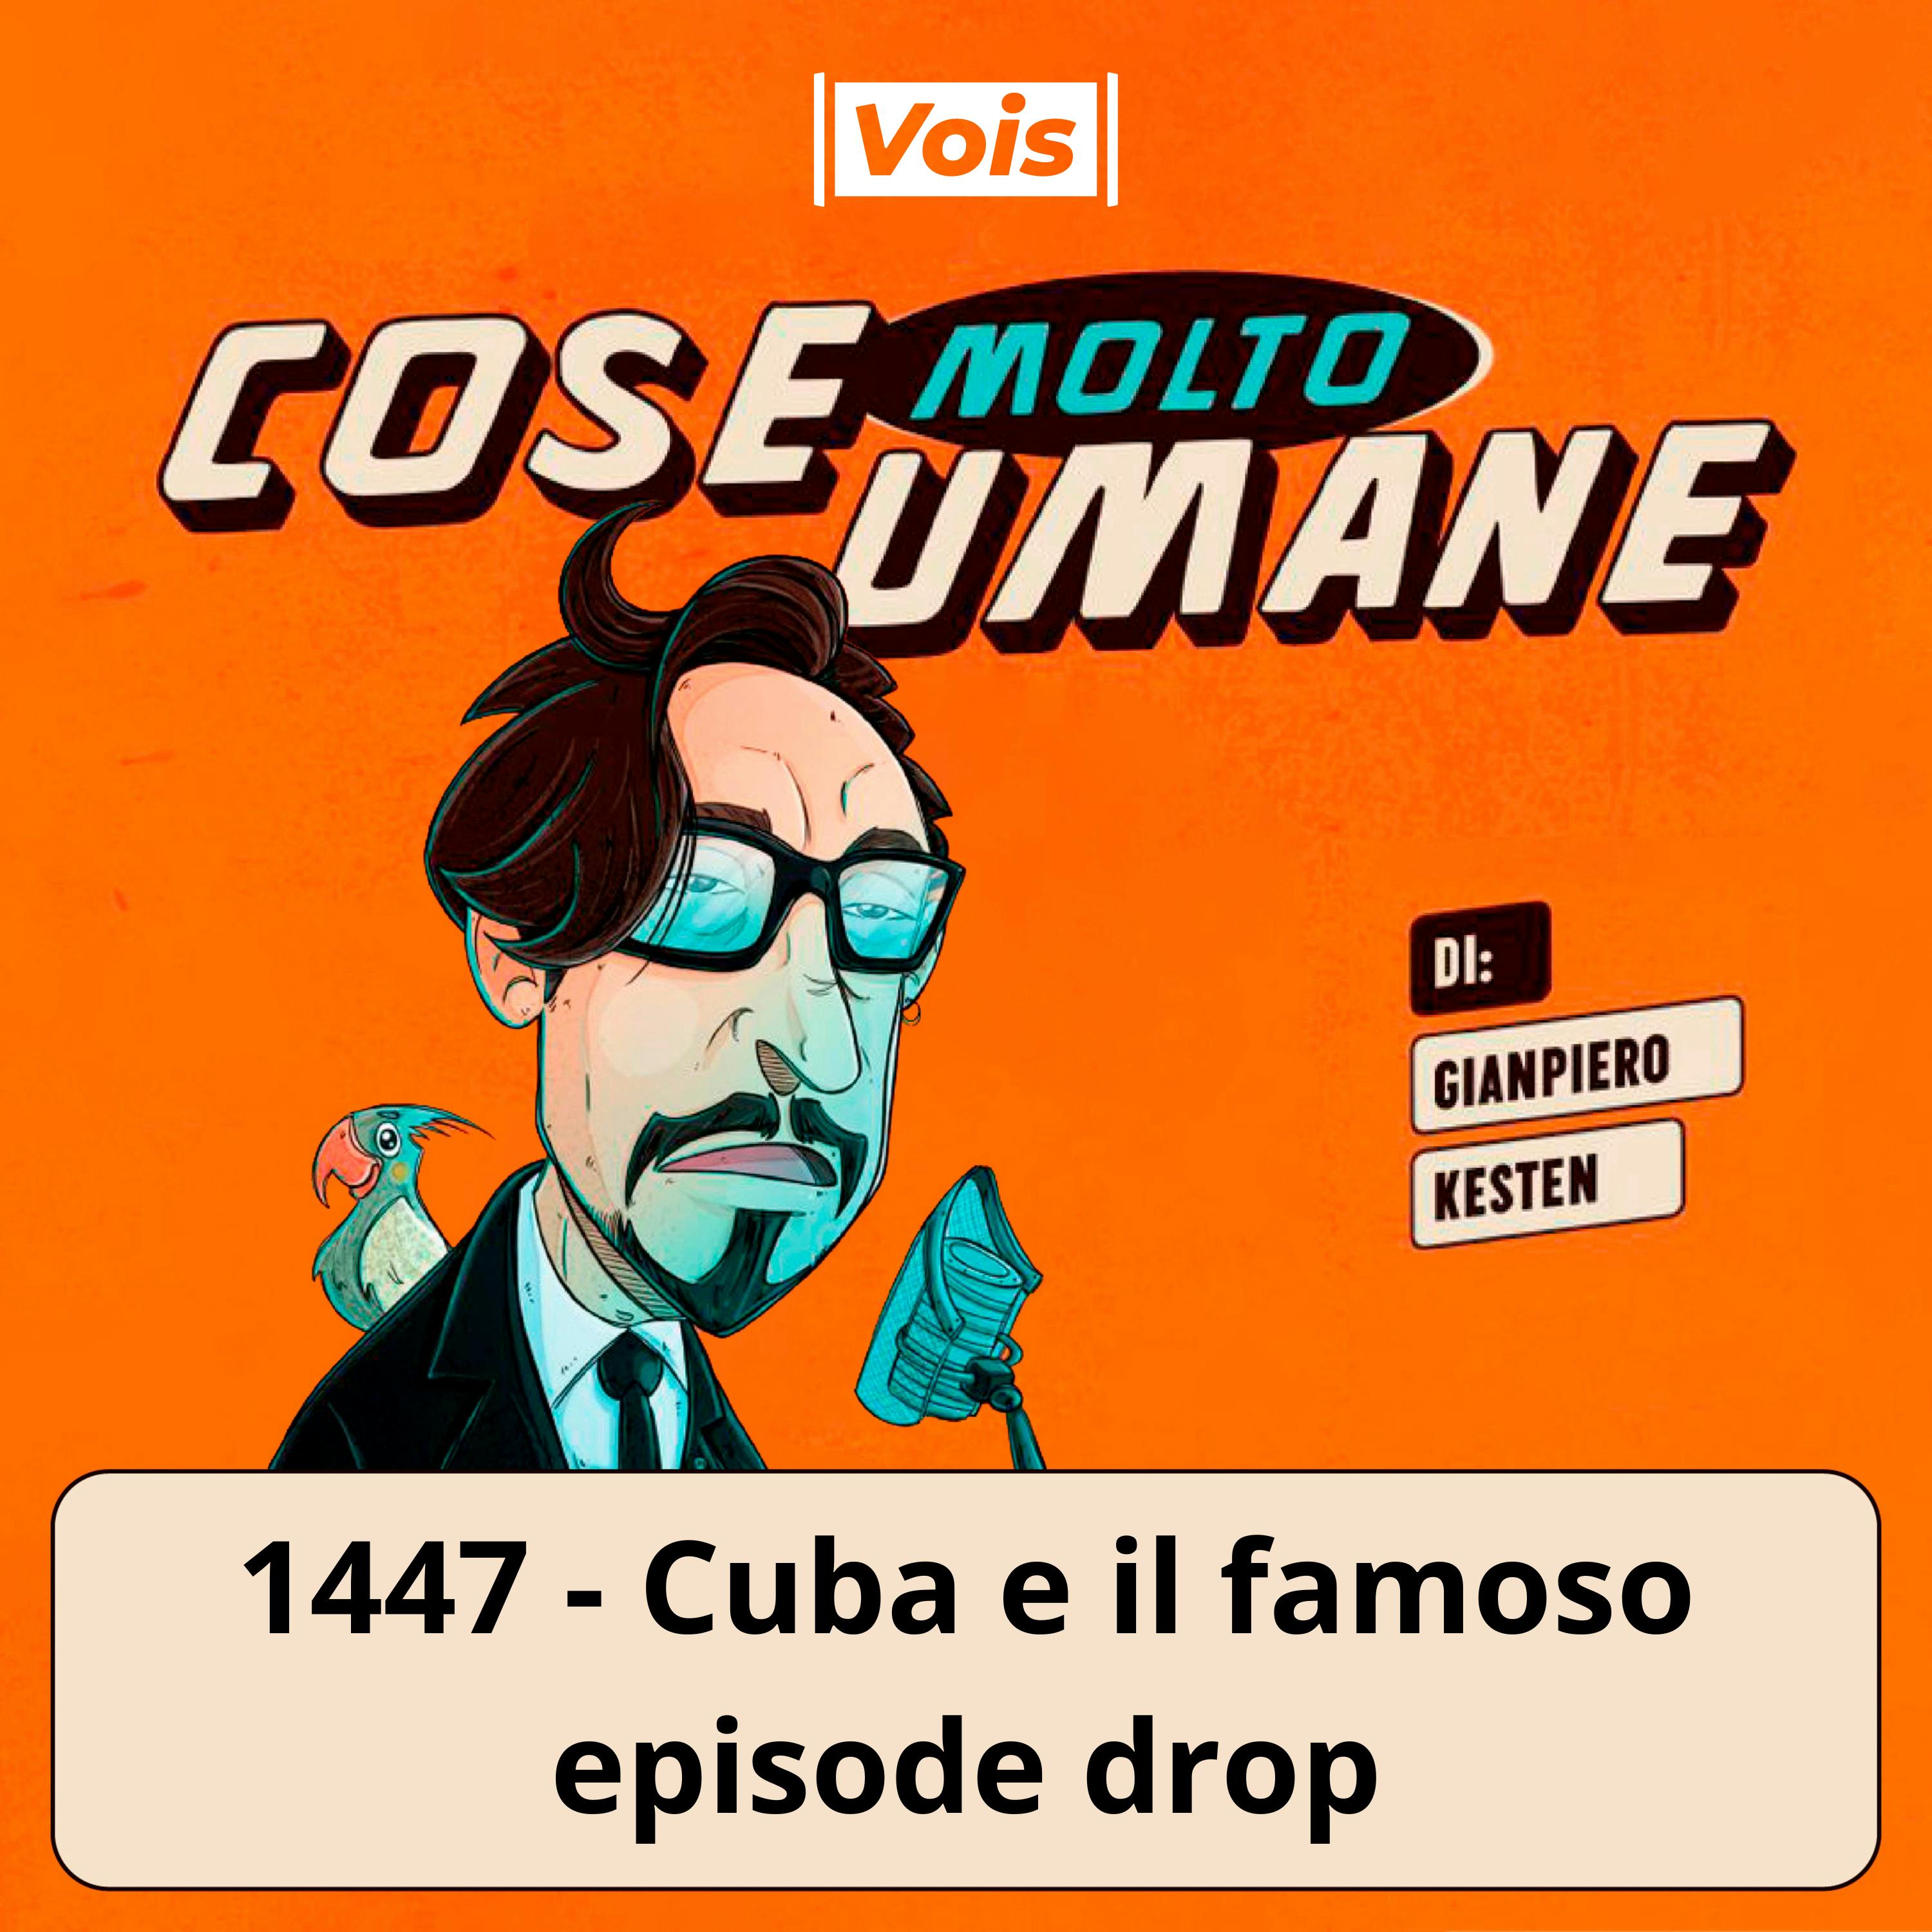 1447 - Cuba e il famoso episode drop